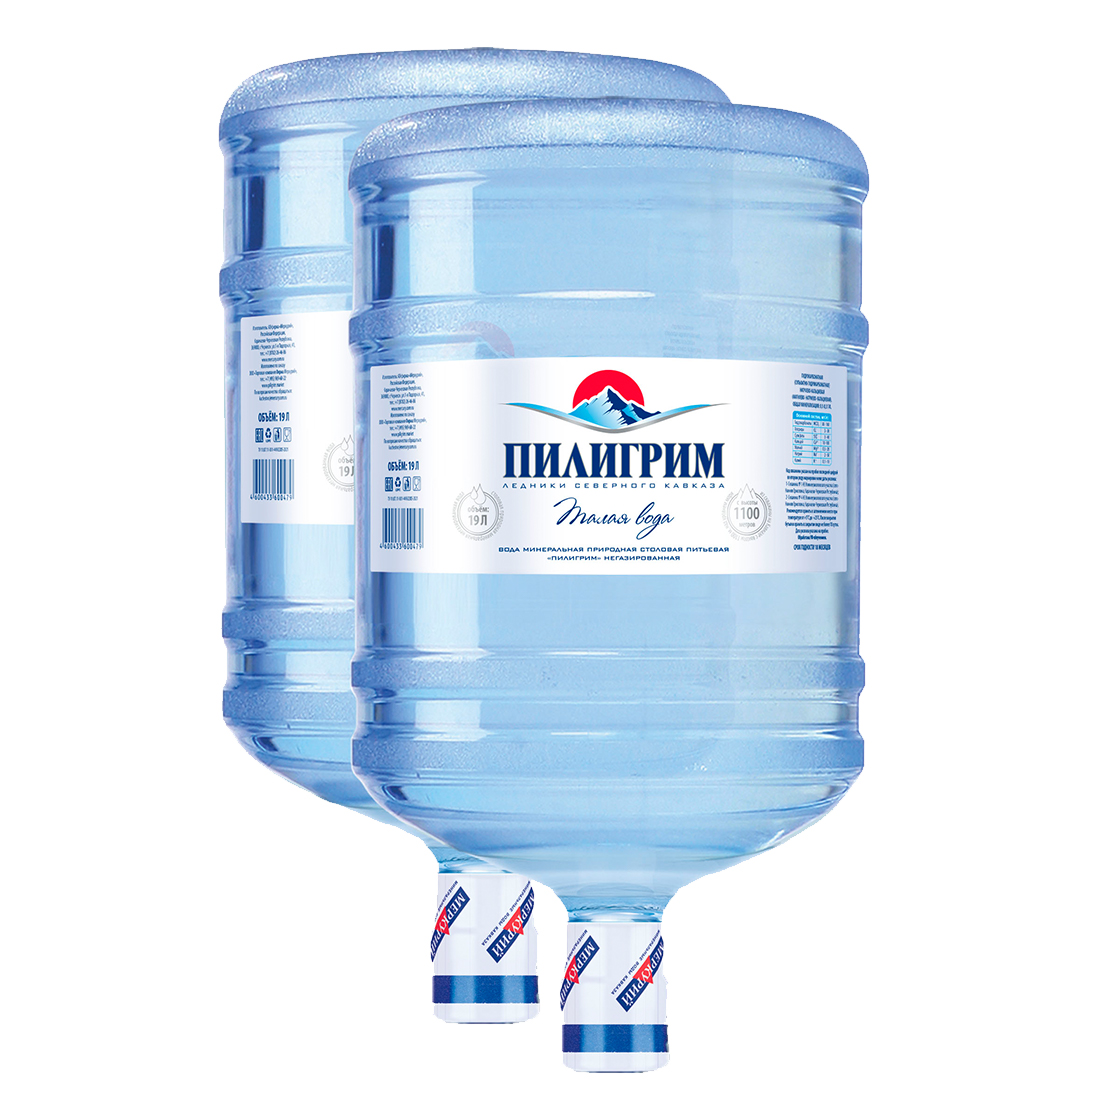 Пилигрим - Вода Минеральная Природная Столовая Питьевая Вода 19 Литров цена от 2 шт.